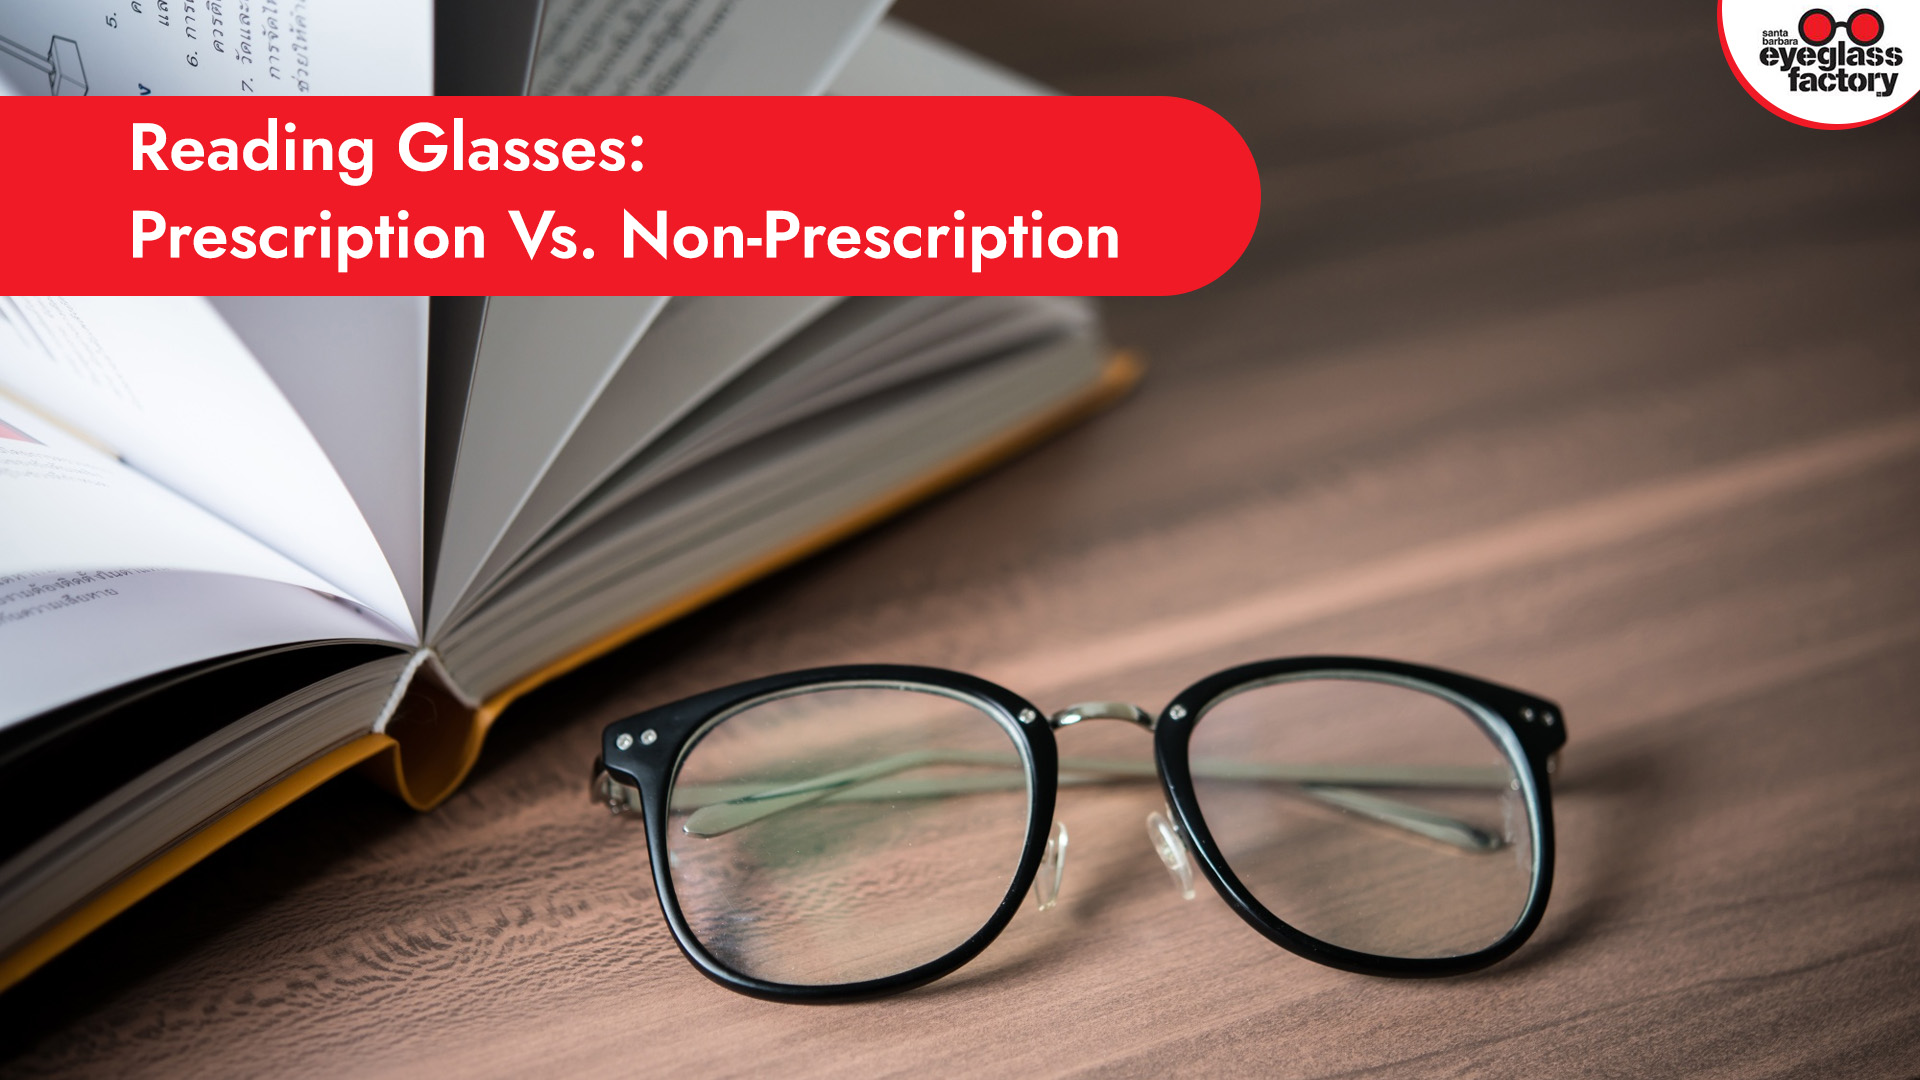 Reading Glasses: Prescription Vs. Non-Prescription